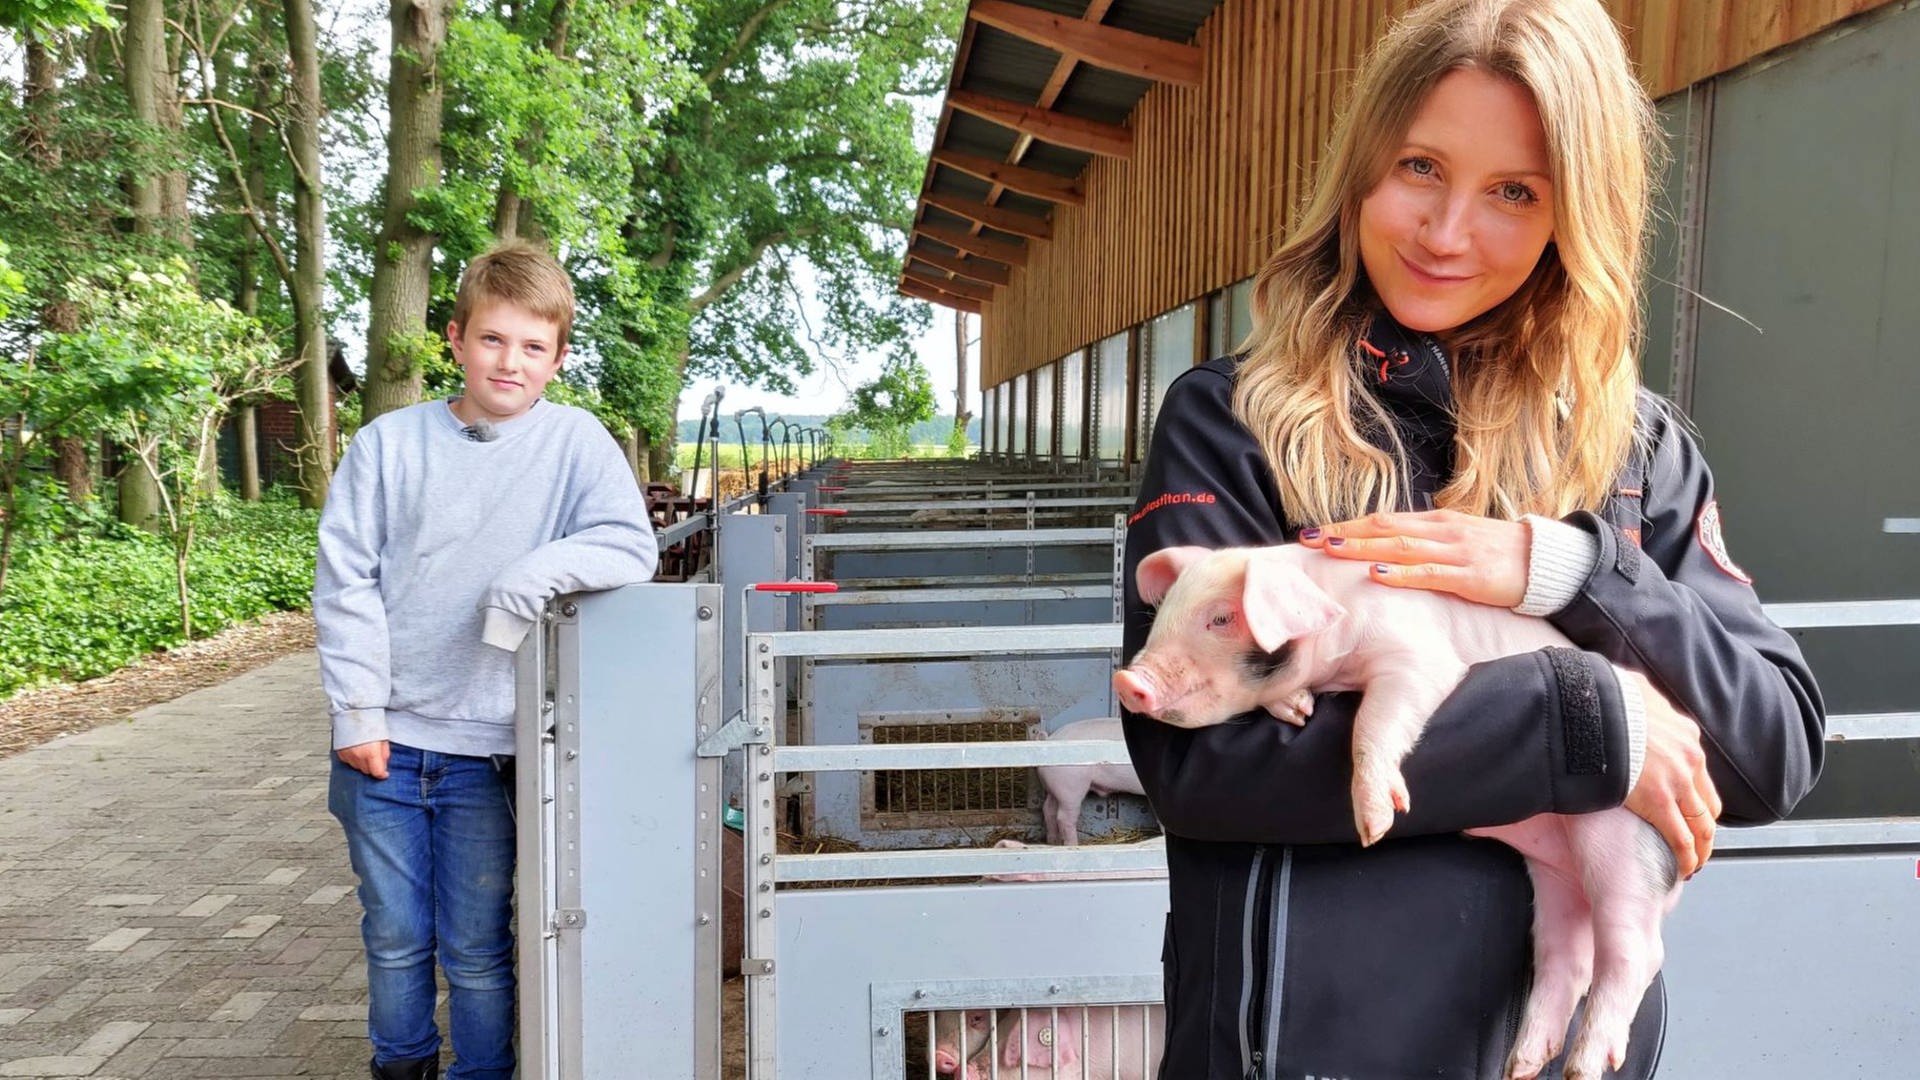 neuneinhalb-Reporterin Jana und der 9-jährige Hinnerk stehen vor den Schweineställen. Jana hält ein kleines Ferkel im Arm. (Foto: WDR, tvision)